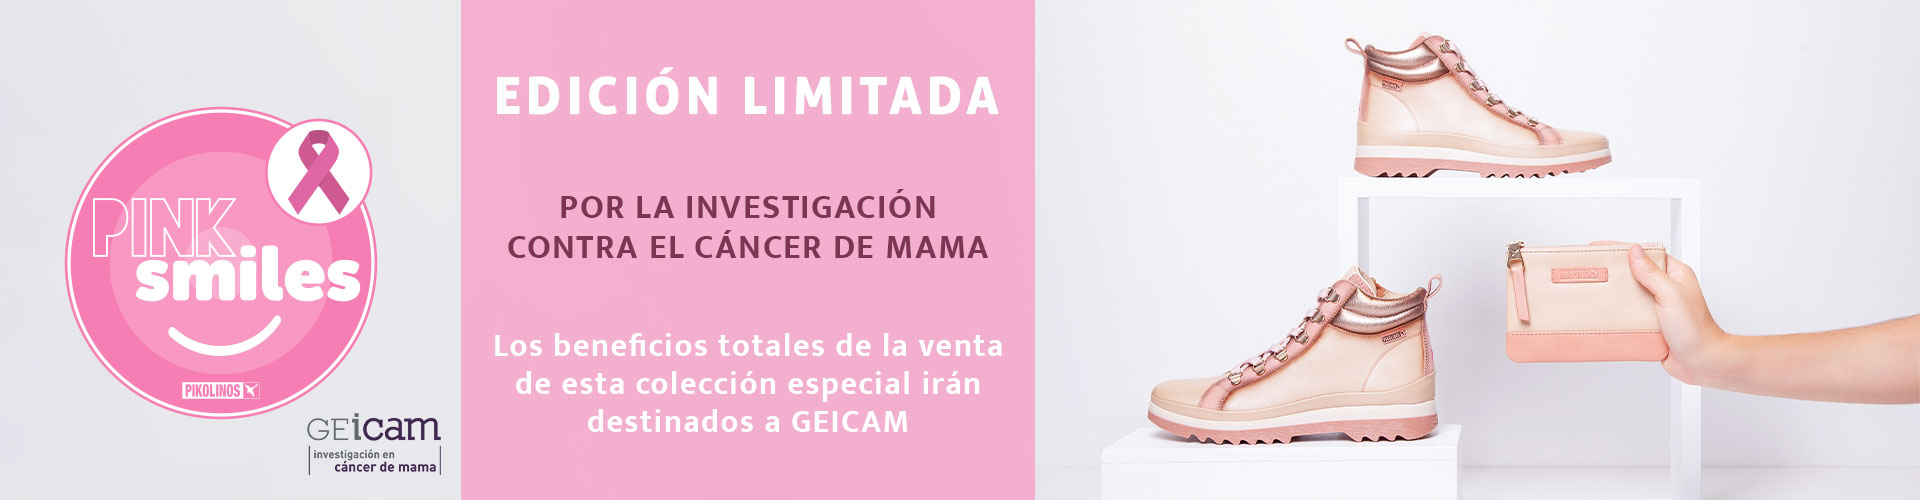 Logo rosa de Pink Smiles con GEicam. Edición limitada por la investigación contra el cáncer de mama. Los beneficios totales de la venta de esta colección especial irán destinados a GEICAM.